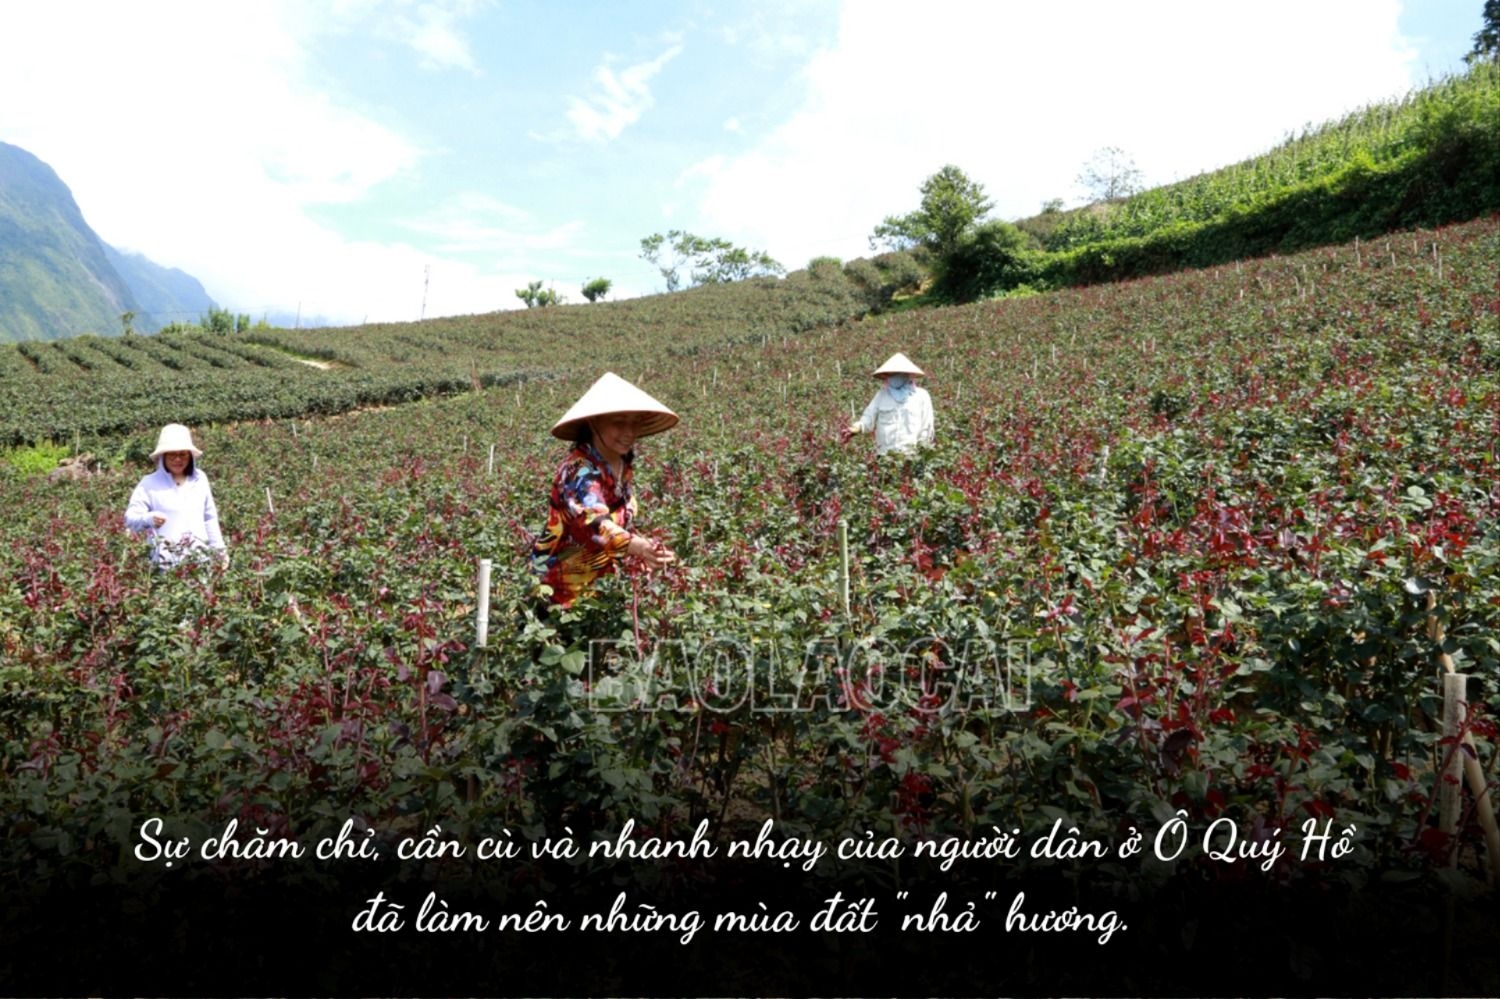 Ở một con đèo nổi tiếng Lào Cai, bất ngờ thấy bạt ngàn hoa hồng cổ, thơm khắp đồi, nông dân kiếm bộn tiền - Ảnh 5.